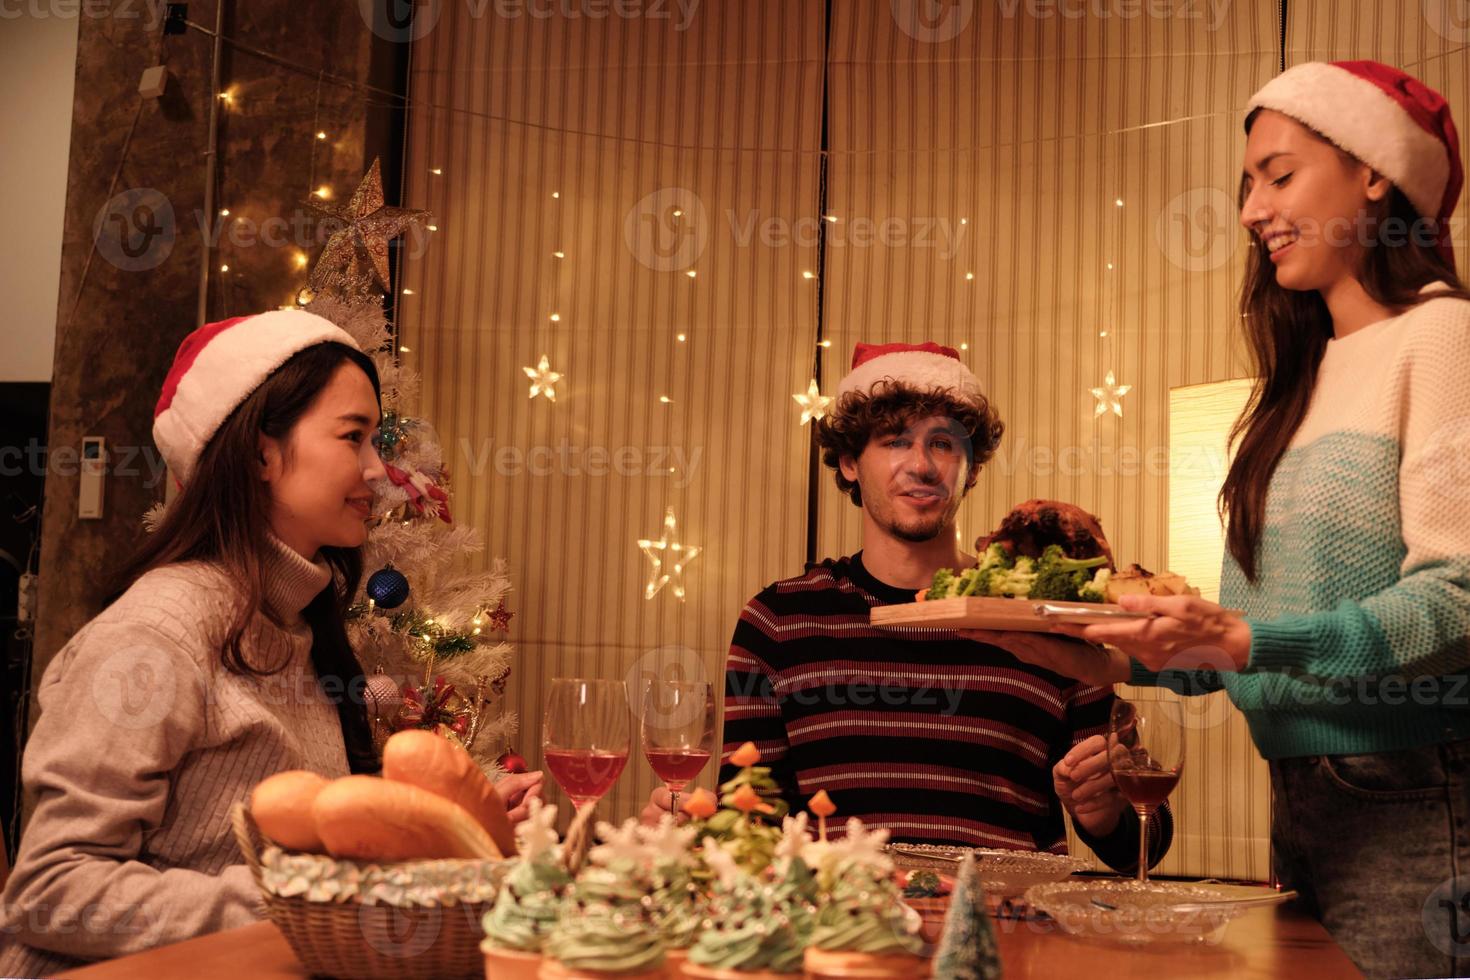 en familjs speciella måltid, ung hona serverar rostad kalkon till vänner och glad med drinkar under en middag hemma i matsalen dekorerad för julfest och nyårsfest. foto